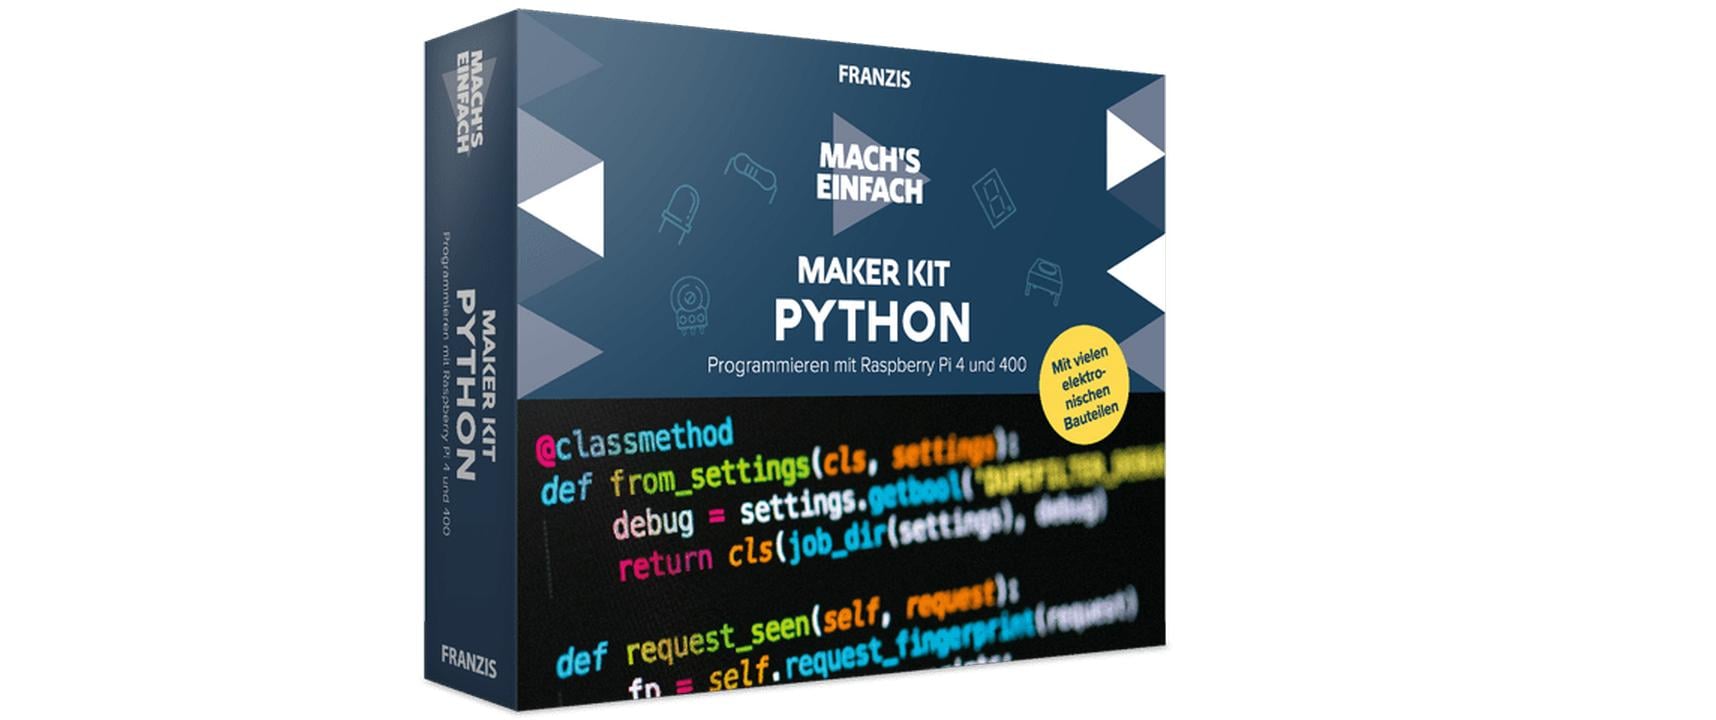 Franzis Erweiterungsset Mach's einfach – Maker Kit Python Deutsch